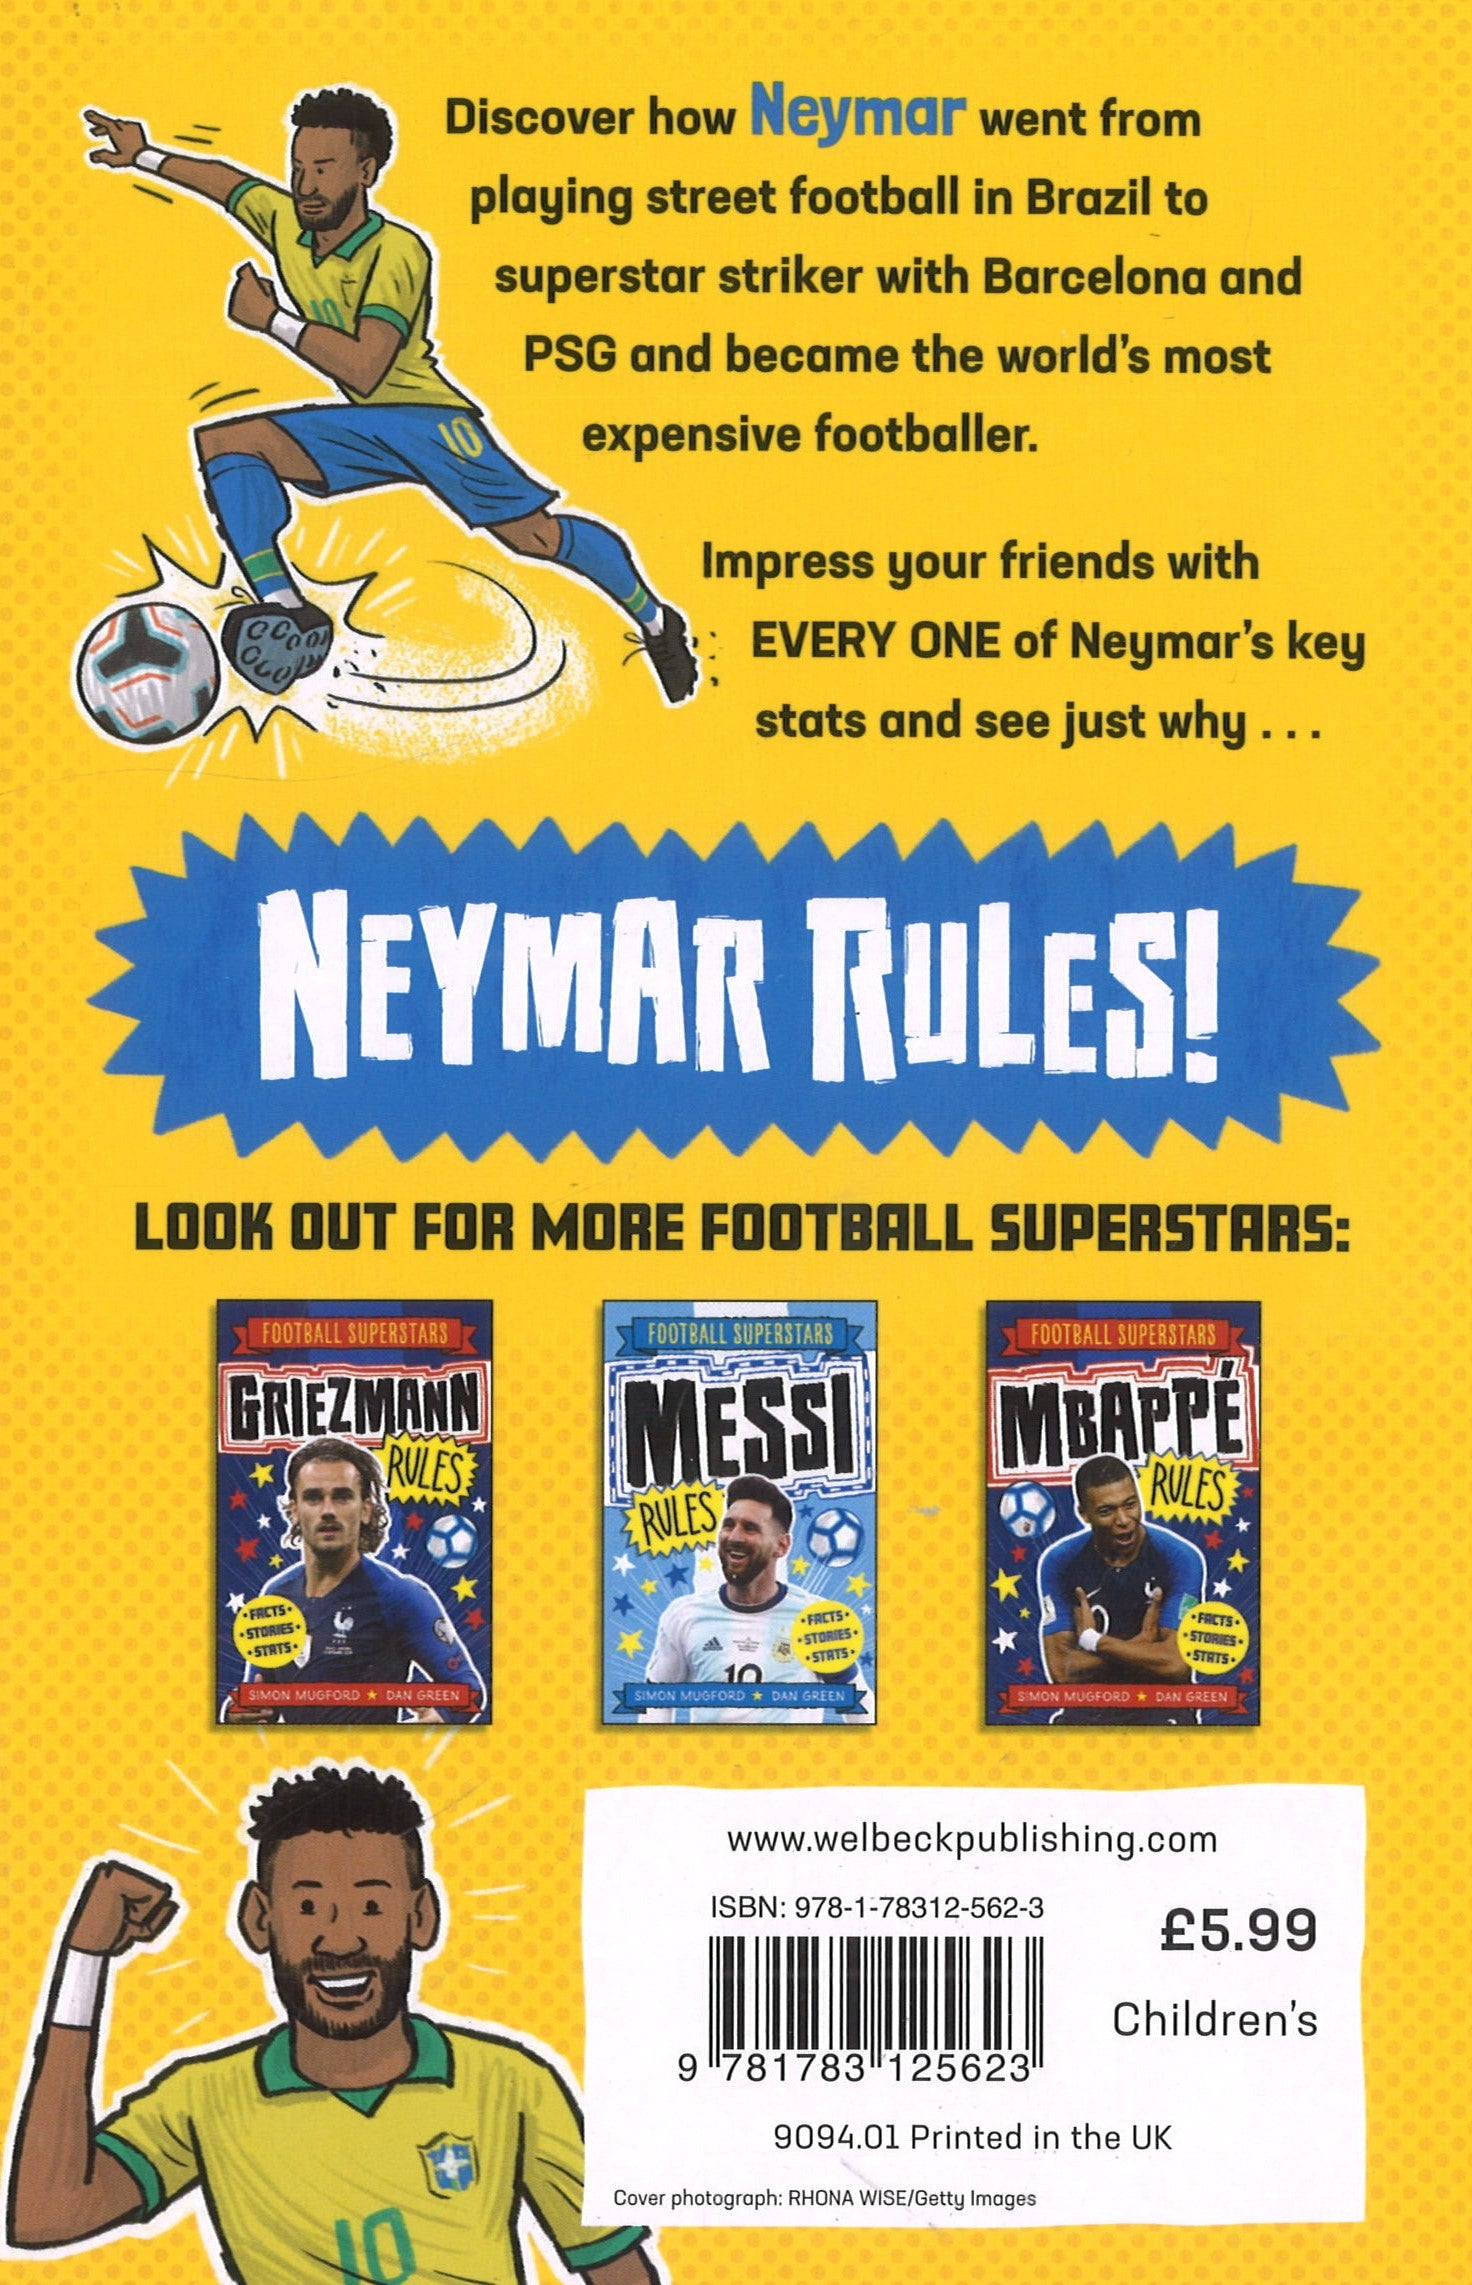 Football Superstars: Neymar Rules